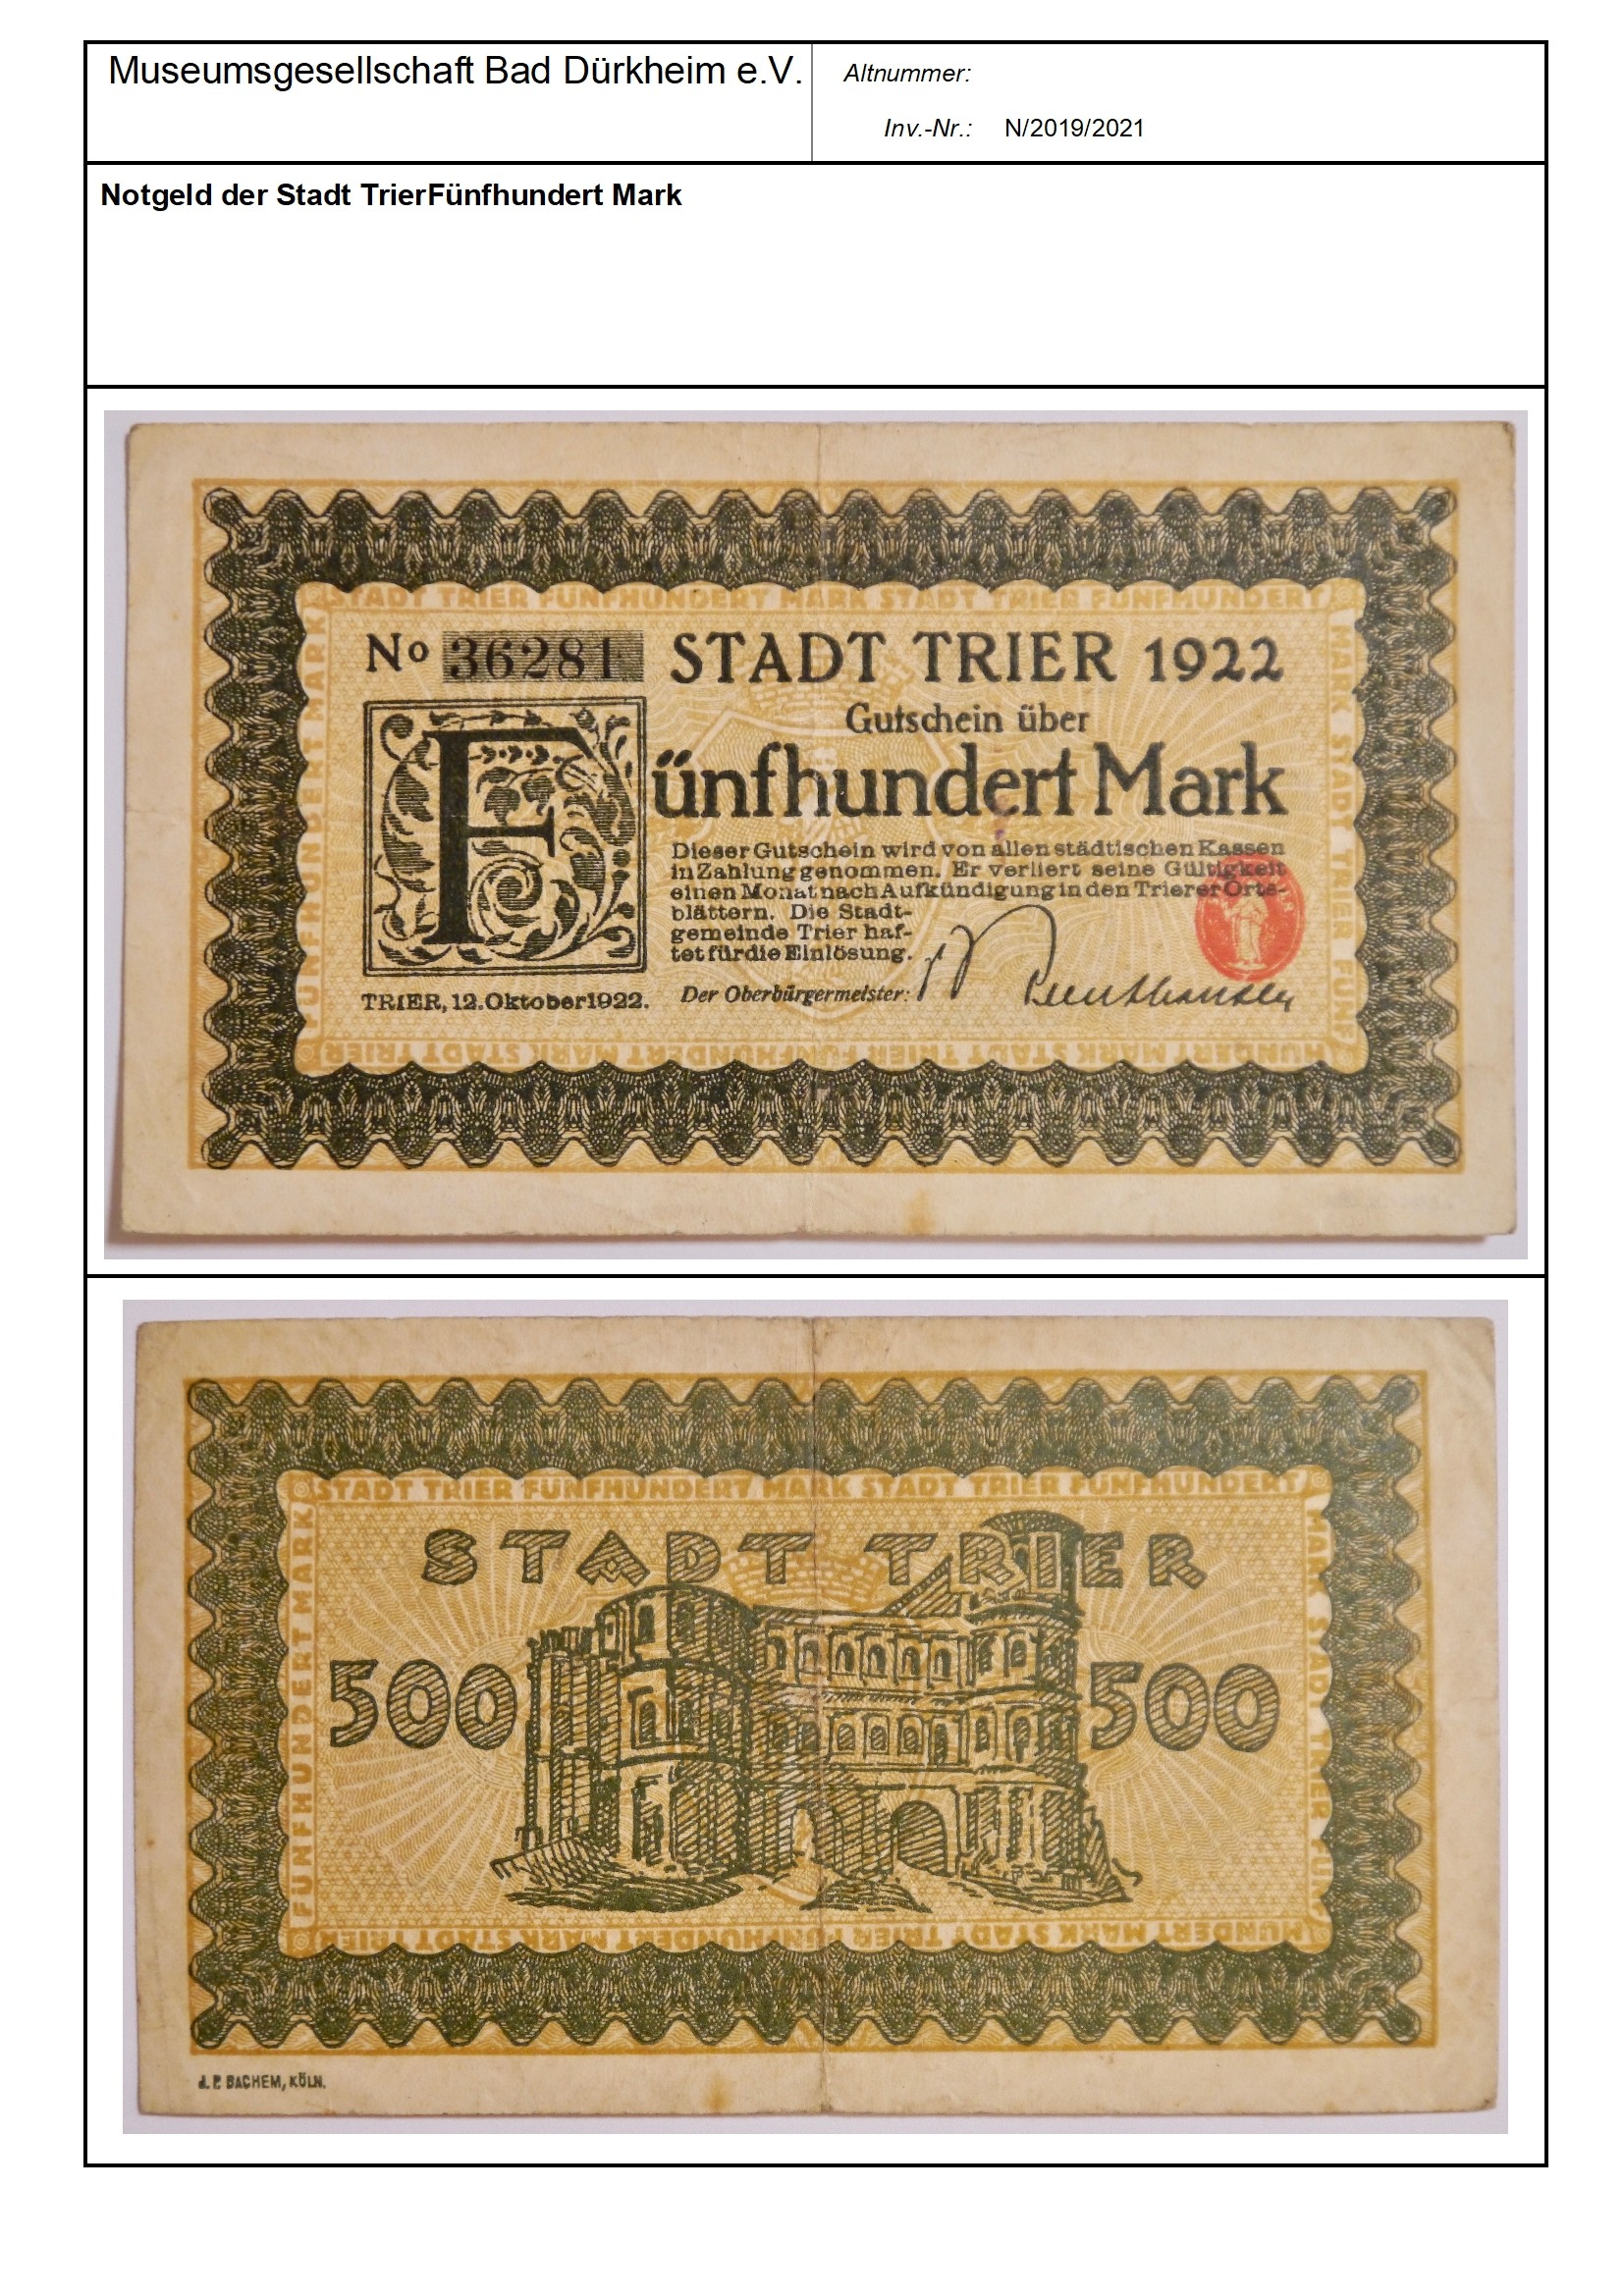 Notgeld der Stadt Trier Fünfhundert Mark
Serien-Nummer: No 36281 (Museumsgesellschaft Bad Dürkheim e.V. CC BY-NC-SA)